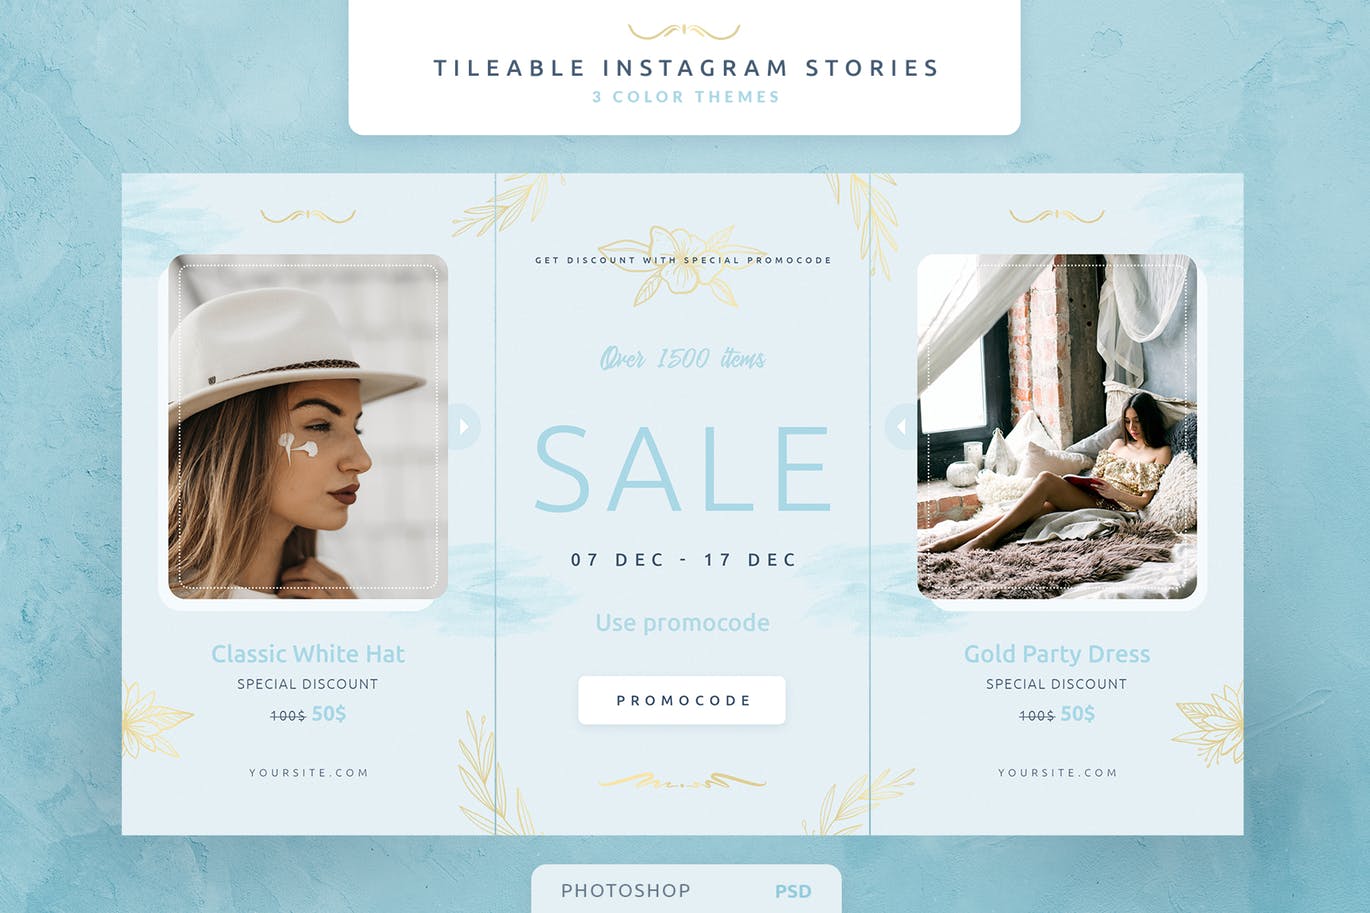 创意三列式Instagram社交品牌故事设计模板蚂蚁素材精选 Tileable Instagram Stories插图(1)